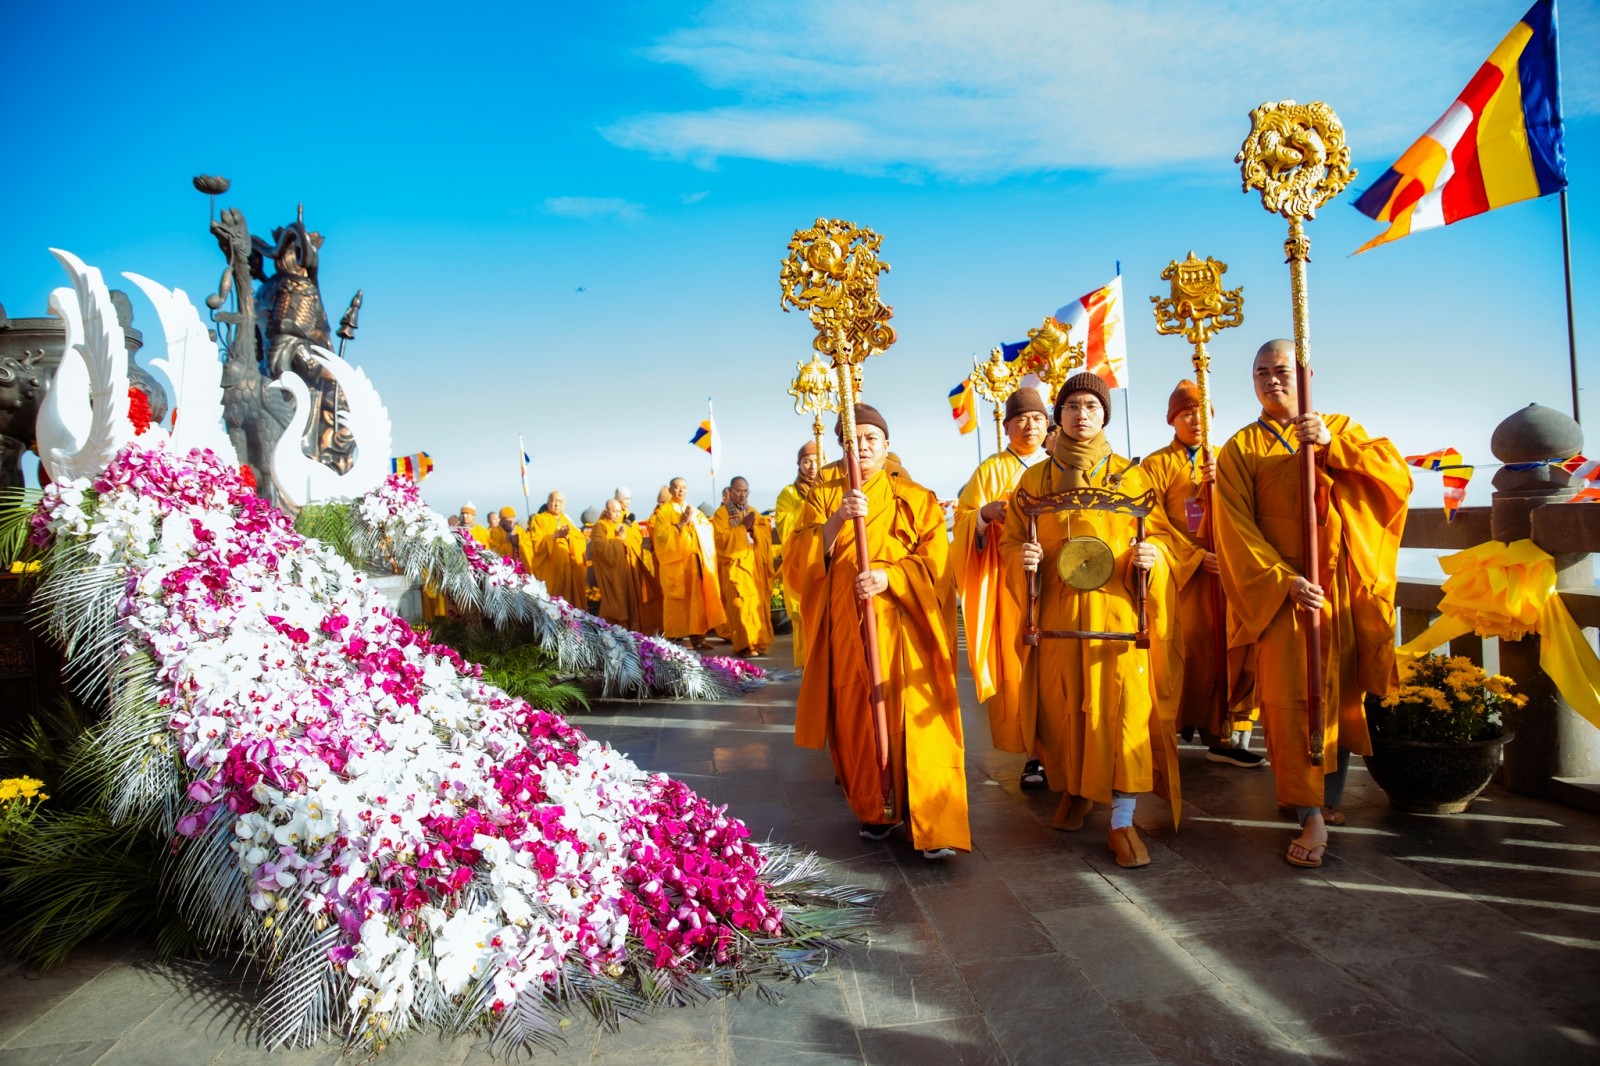 Đại lễ diễn ra tại quần thể văn hóa tâm linh Fansipan trong tiết trời trong xanh, nắng đẹp. Sự kiện có sự tham gia của hàng trăm chư tôn đức, hòa thượng, tăng ni cùng hàng ngàn phật tử, du khách đến từ nhiều tỉnh thành trên cả nước.